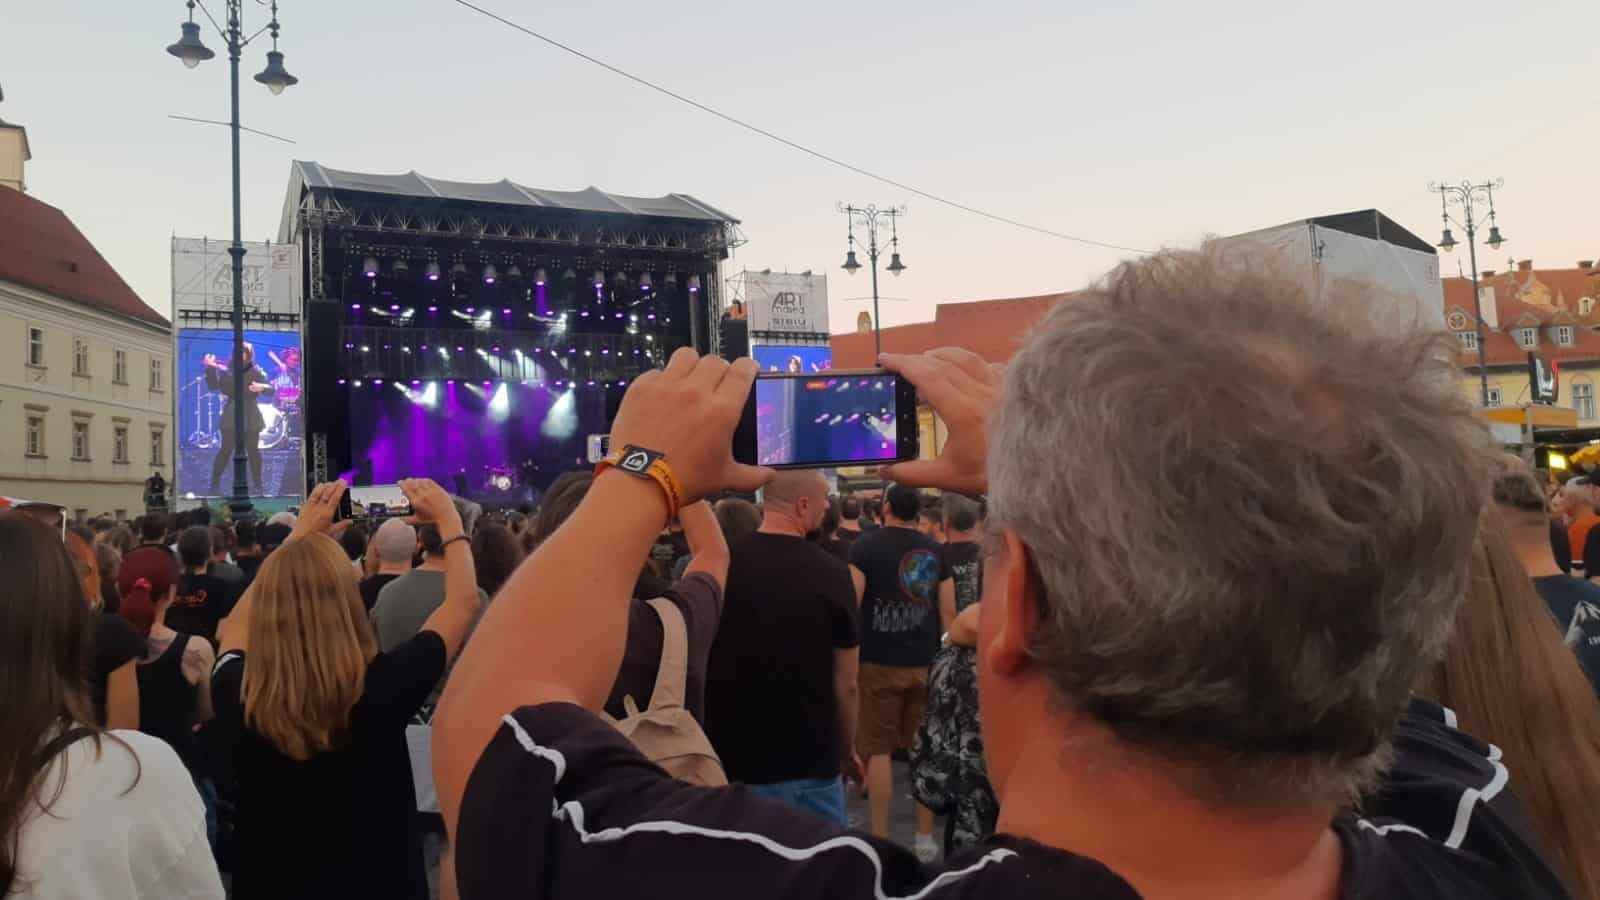 peste 10.000 de spectatori, la concertul korn de la artmania. formația americană a făcut show pe scena din piața mare (foto, video)